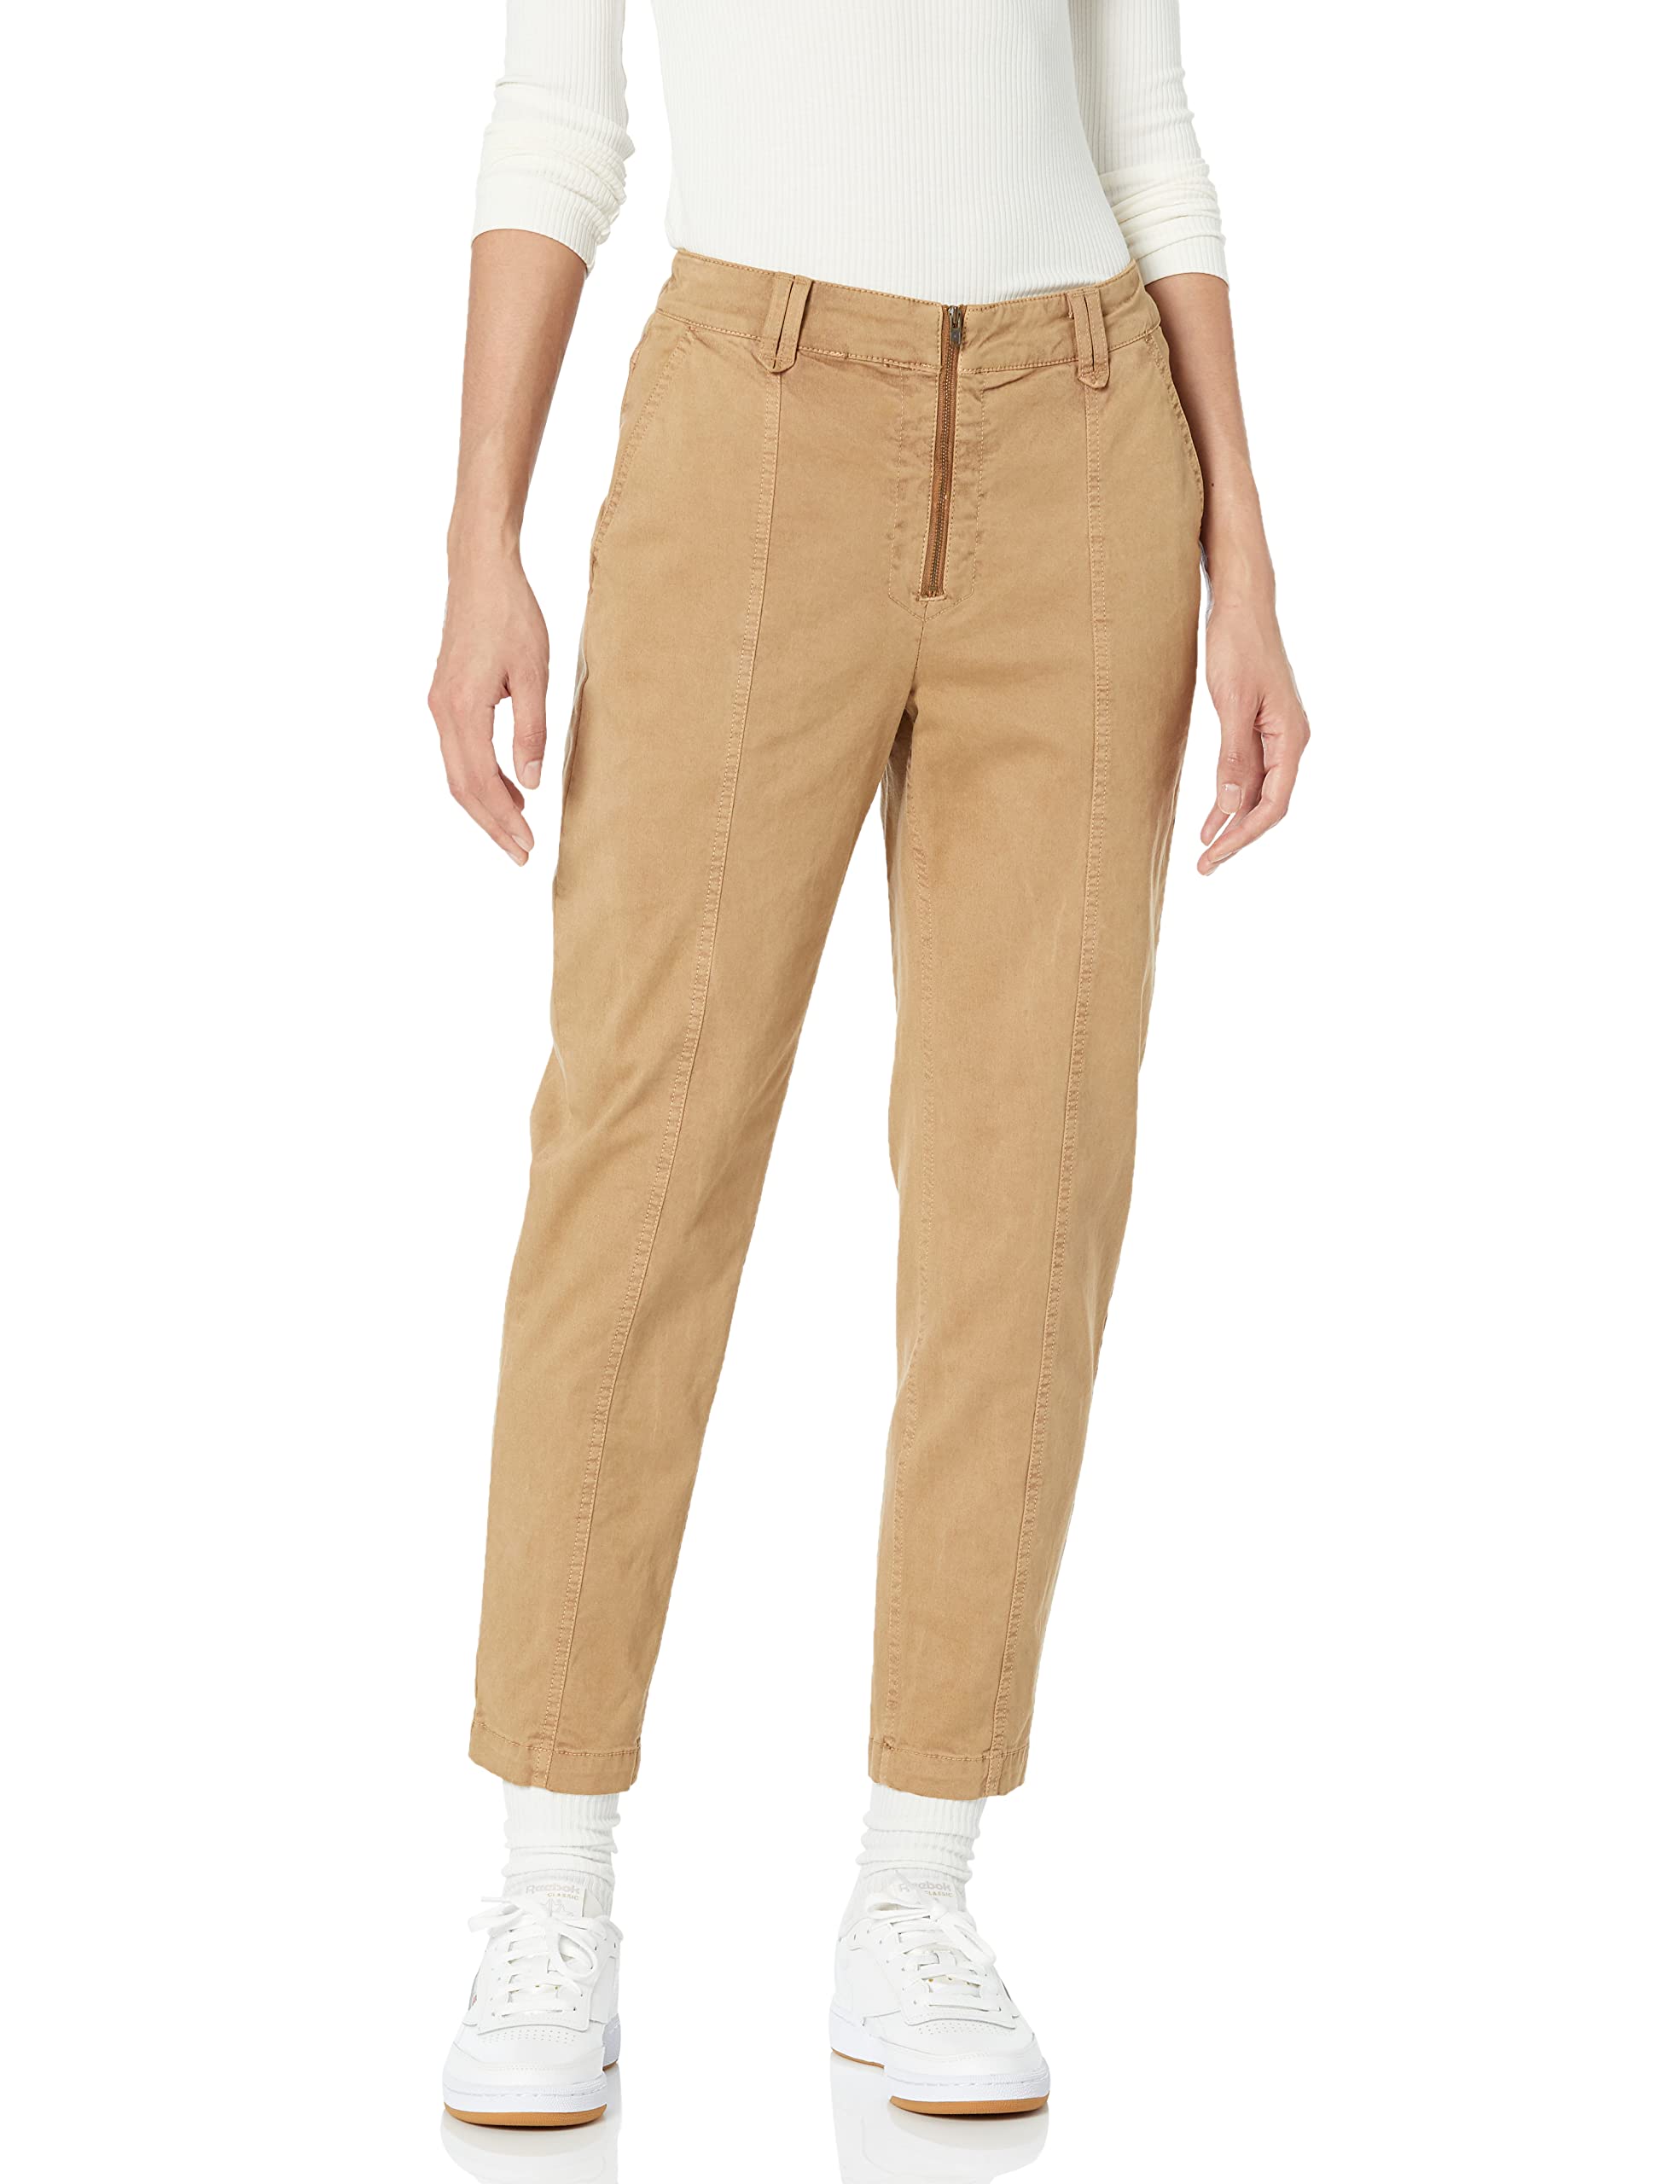 acheter Pantalon Chino Utilitaire, Textile élastique (Déjà Goodthreads) Femme pNDH5uG4r boutique en ligne